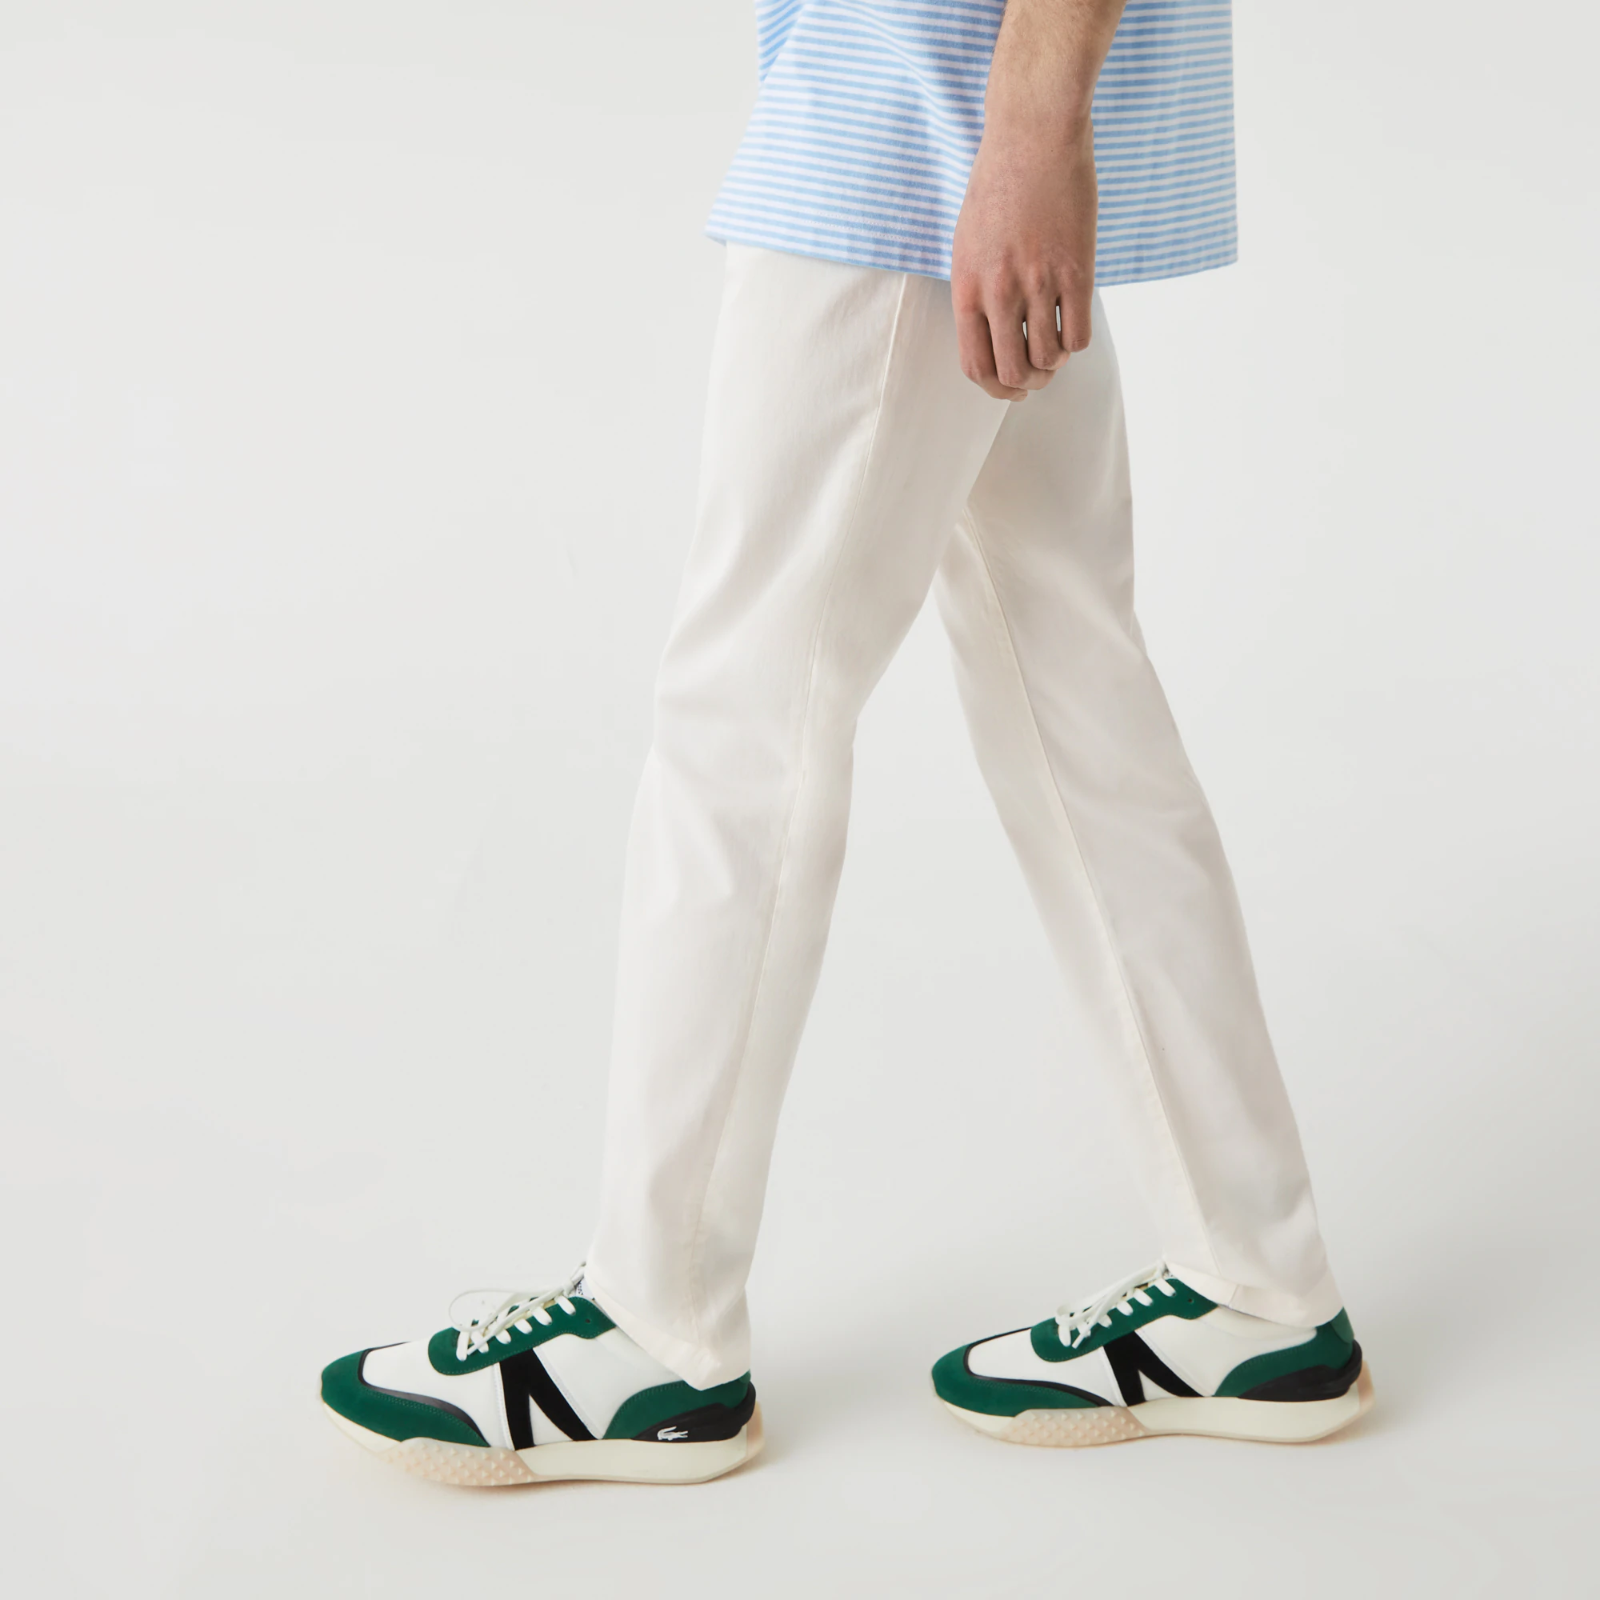 Men&#039;s New Classic Slim Fit Stretch Cotton Pants HH2661-51